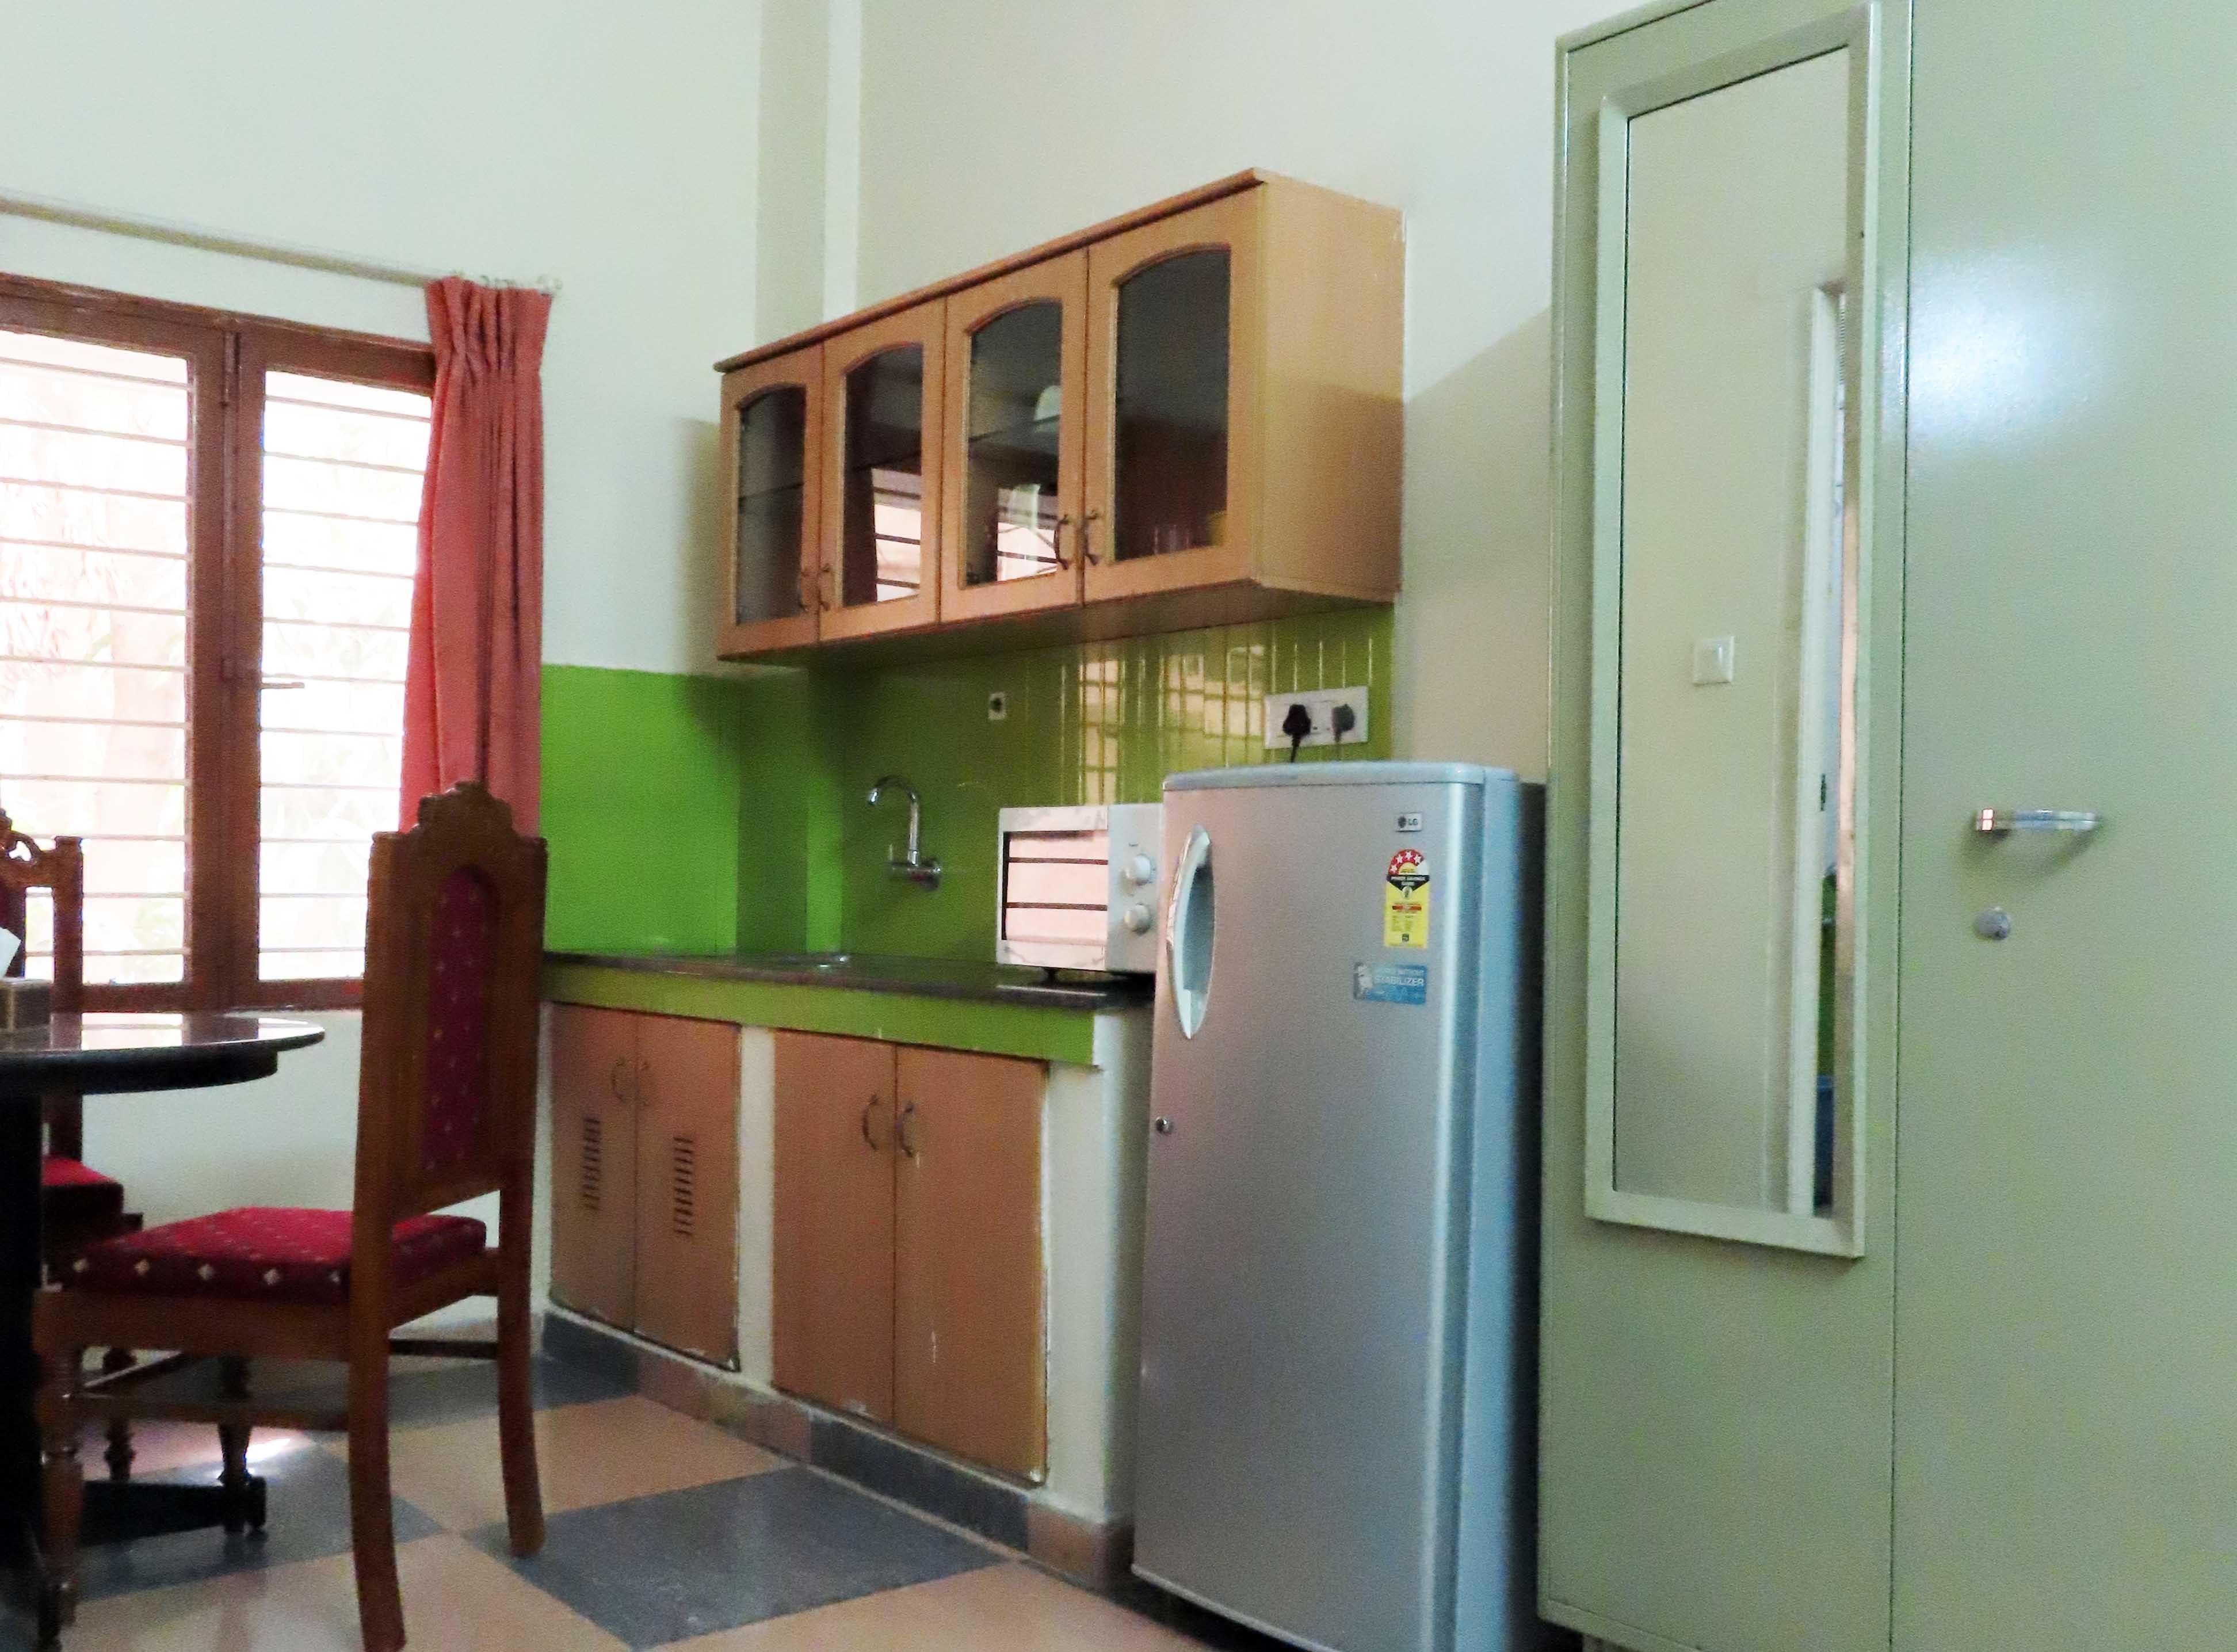 Kitchen in Jonas Hall student housing in Bengaluru, India.